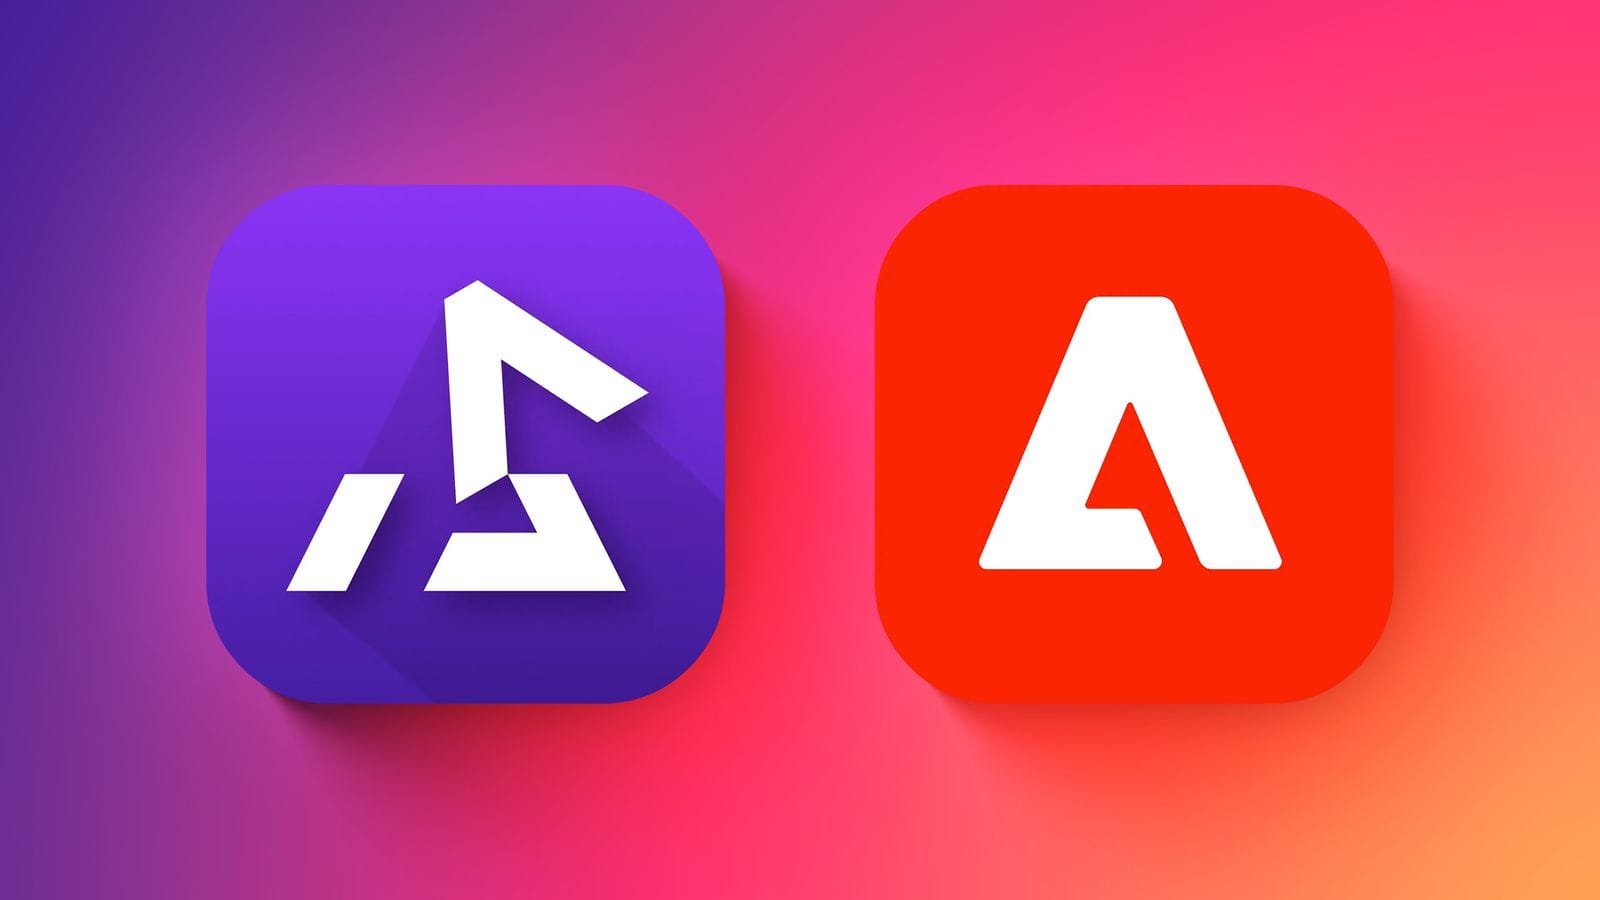 Эмулятор Delta обновил иконку приложения  после того, как Adobe пригрозила судебным иском